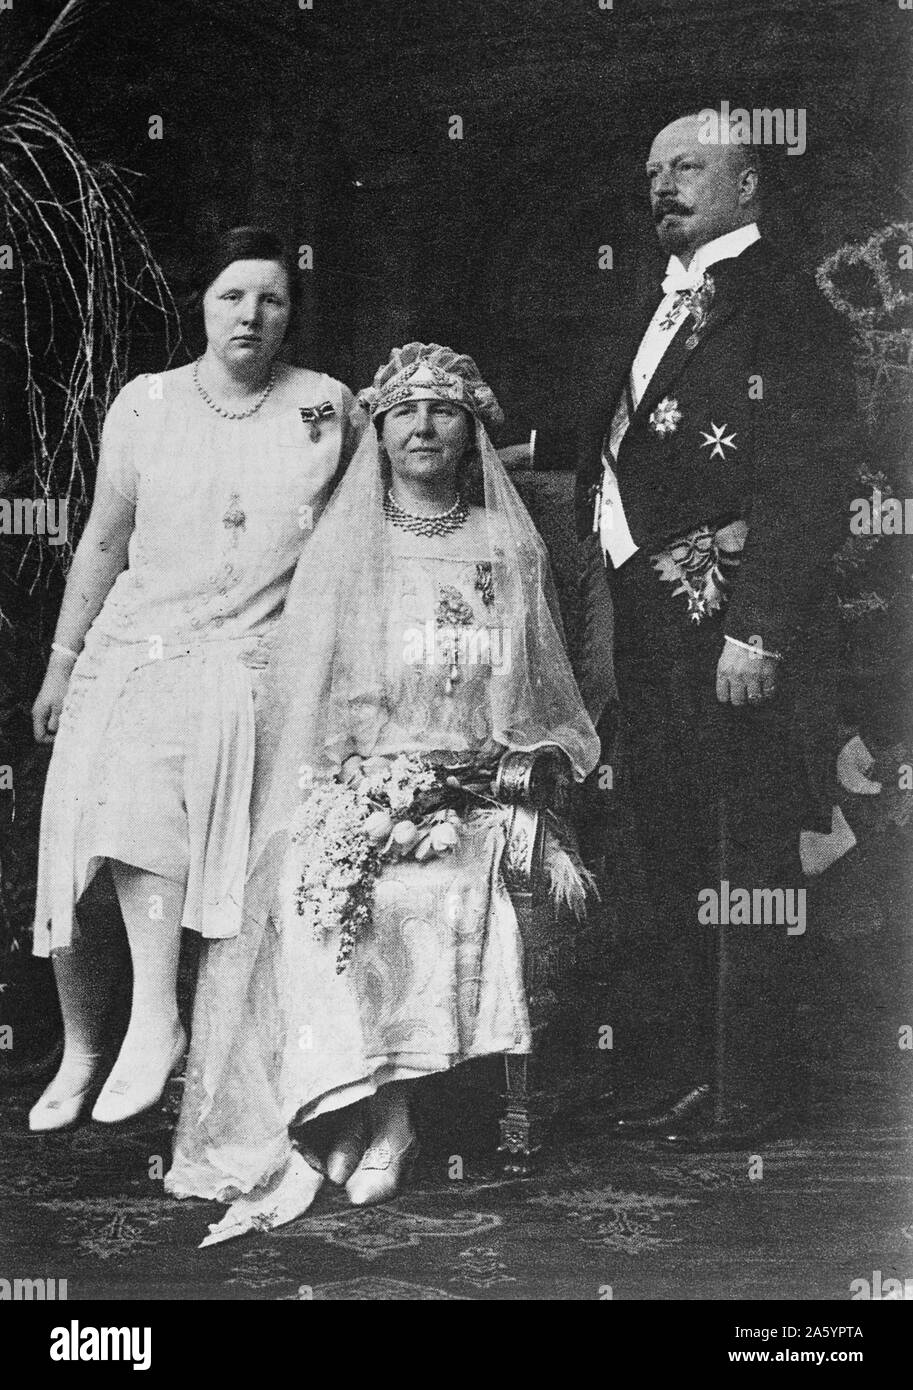 Famille royale néerlandaise, la reine Wilhelmine, Prince Hendrick et la Princesse Juliana. Vers 1925. Banque D'Images